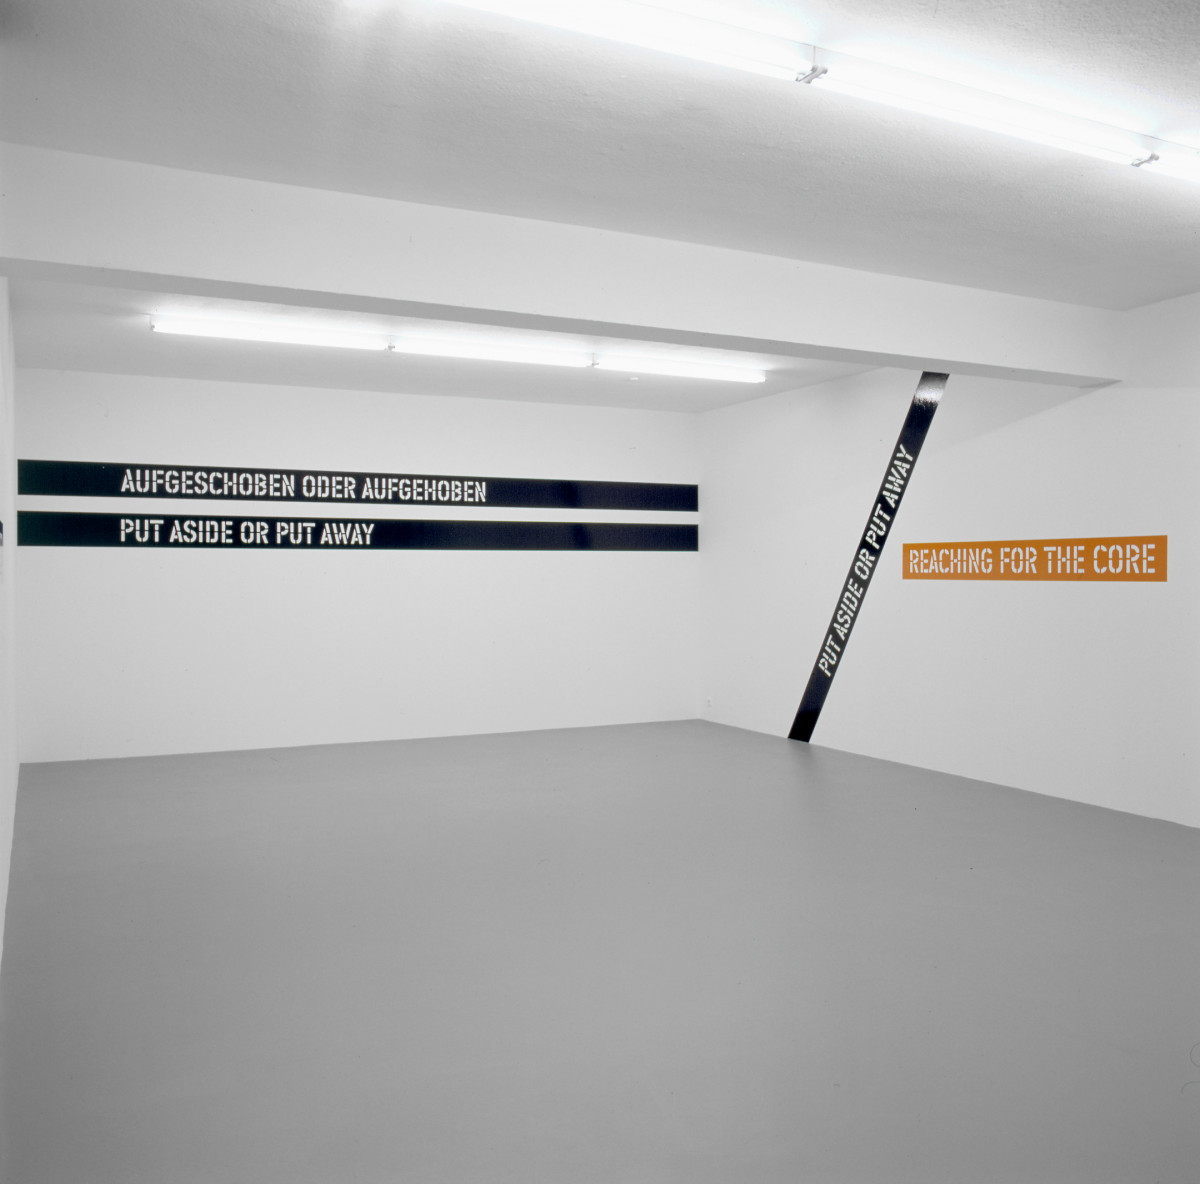 Lawrence Weiner, ‘AUFGESCHOBEN ODER AUFGEHOBEN NACH DEM KERN GREIFEN PUT ASIDE OR PUT AWAY REACHING FOR THE CORE’, Installation view, Buchmann Galerie, 2002